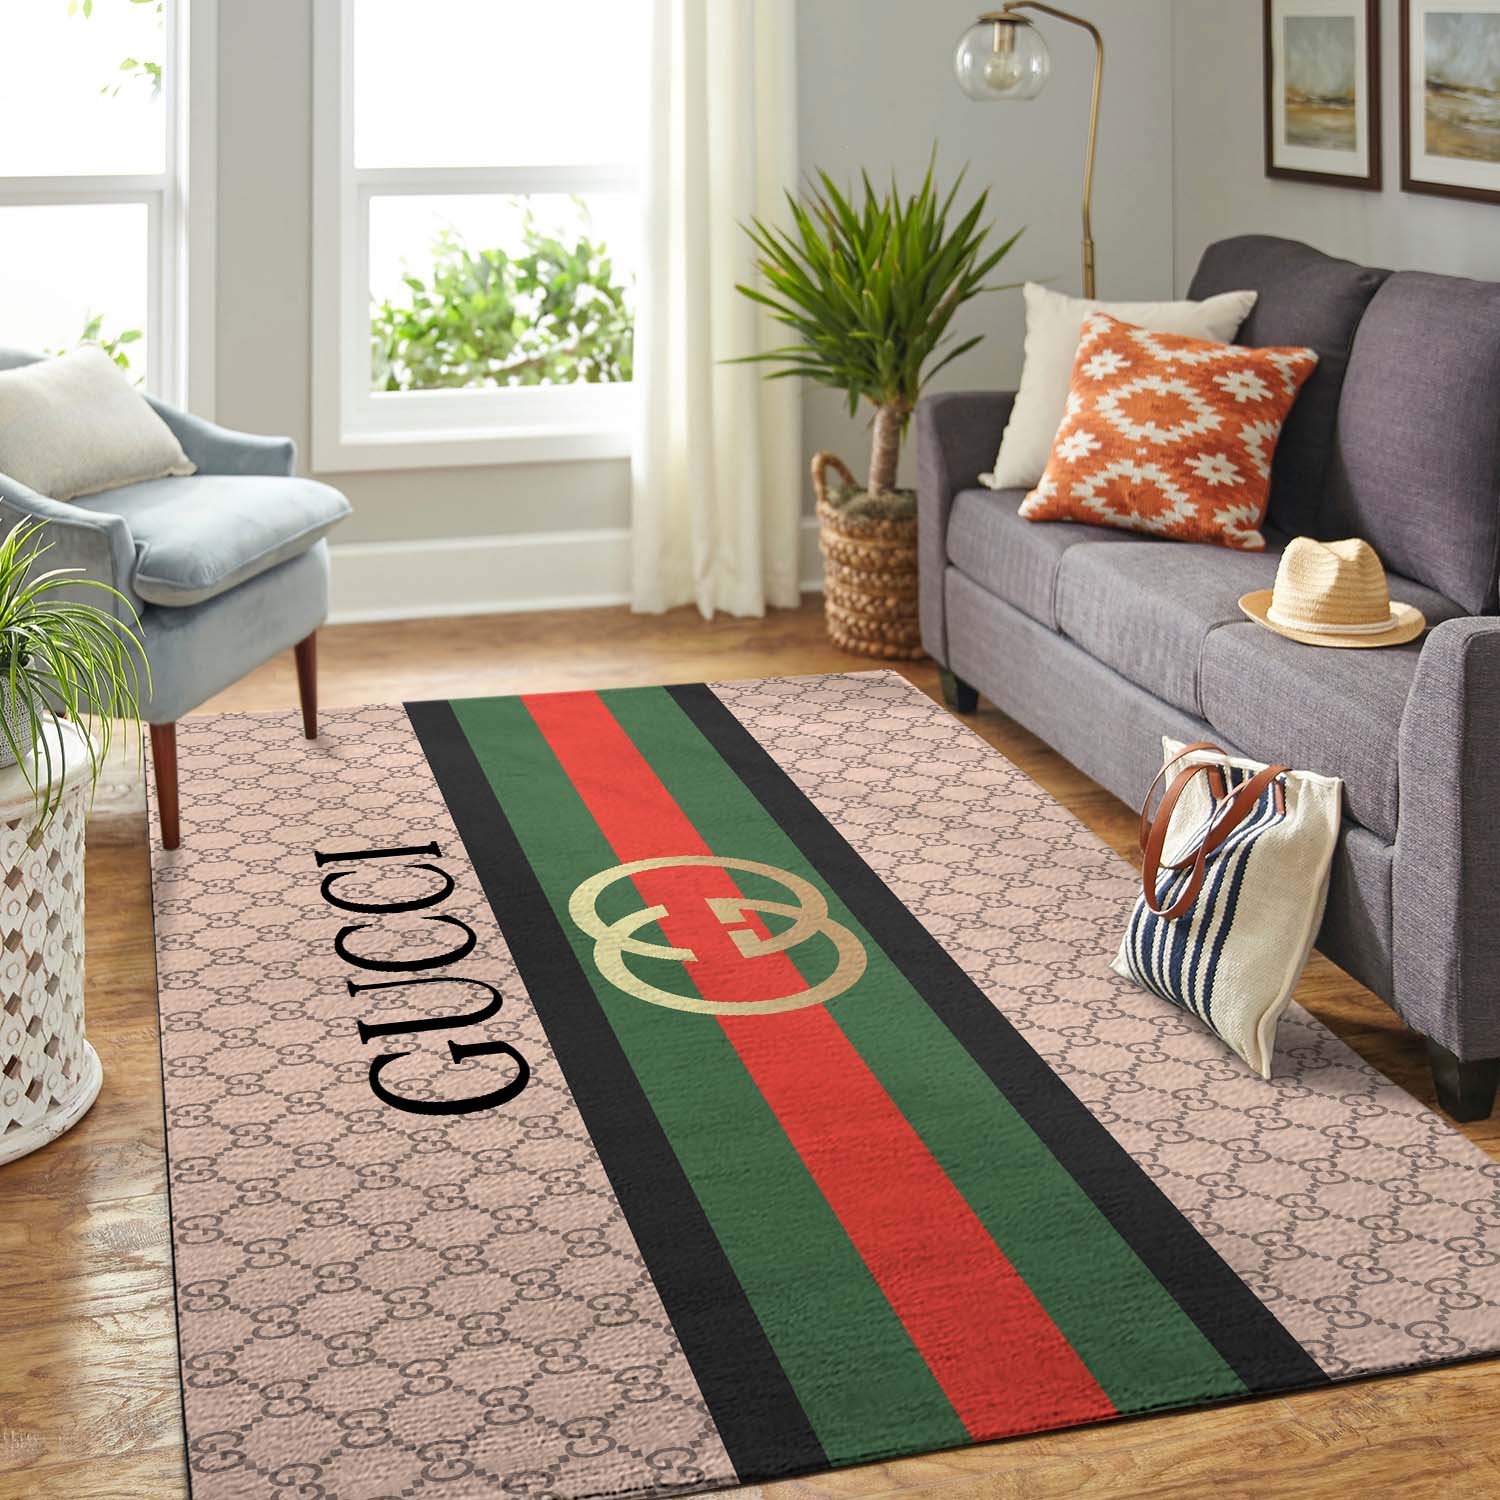 Luxury Gucci signature logo carpet rug